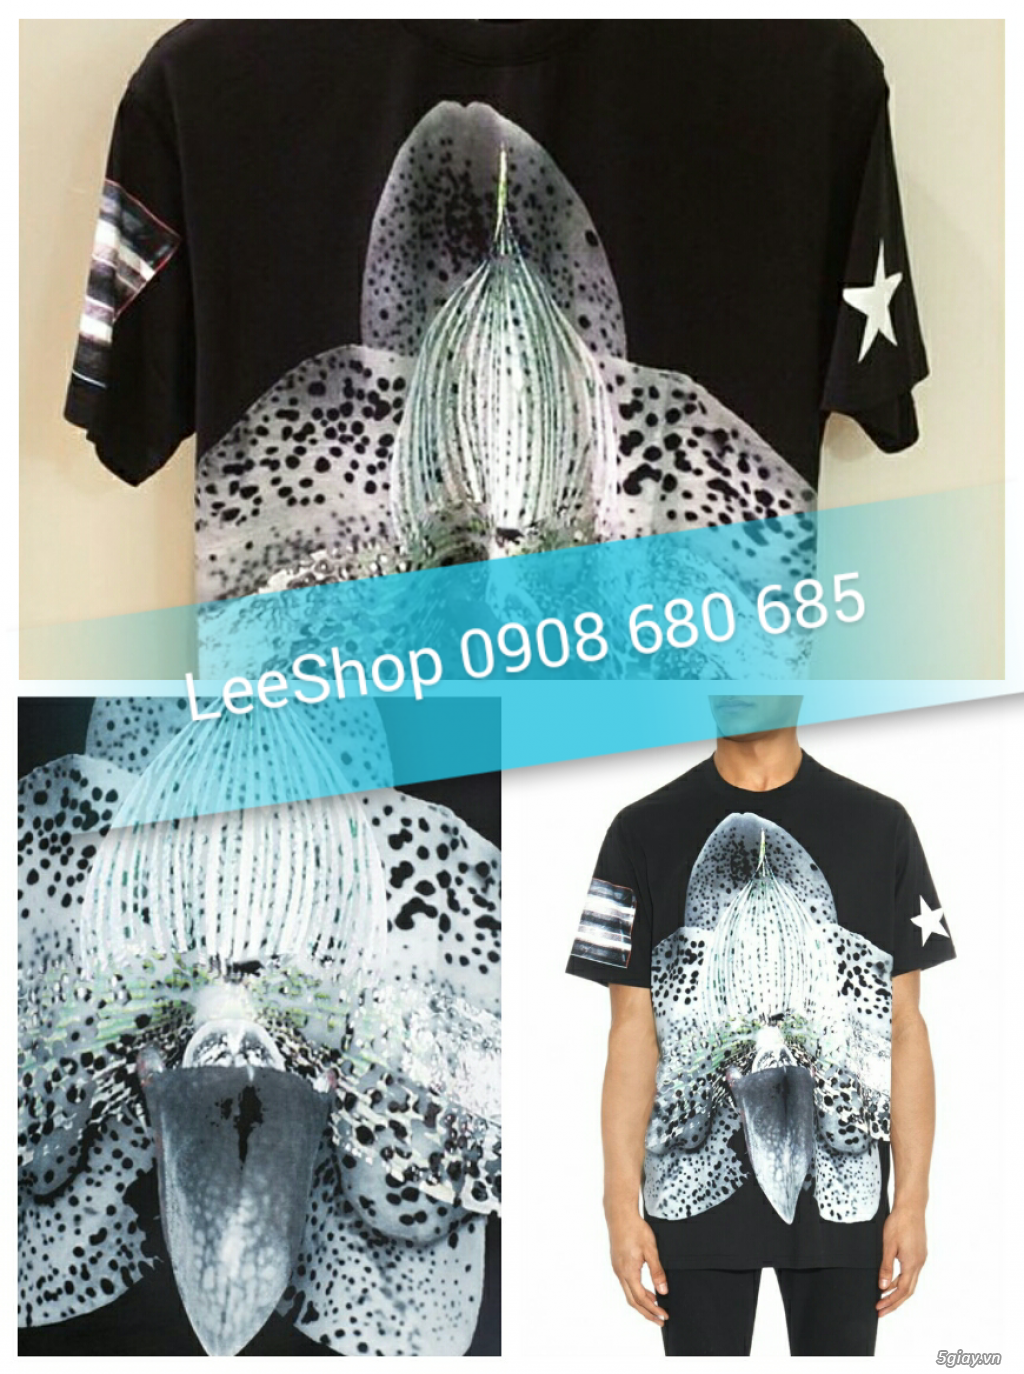 LeeShop_Chuyên quần áo thời trang - giá tốt nhất 5giay.vn - 3